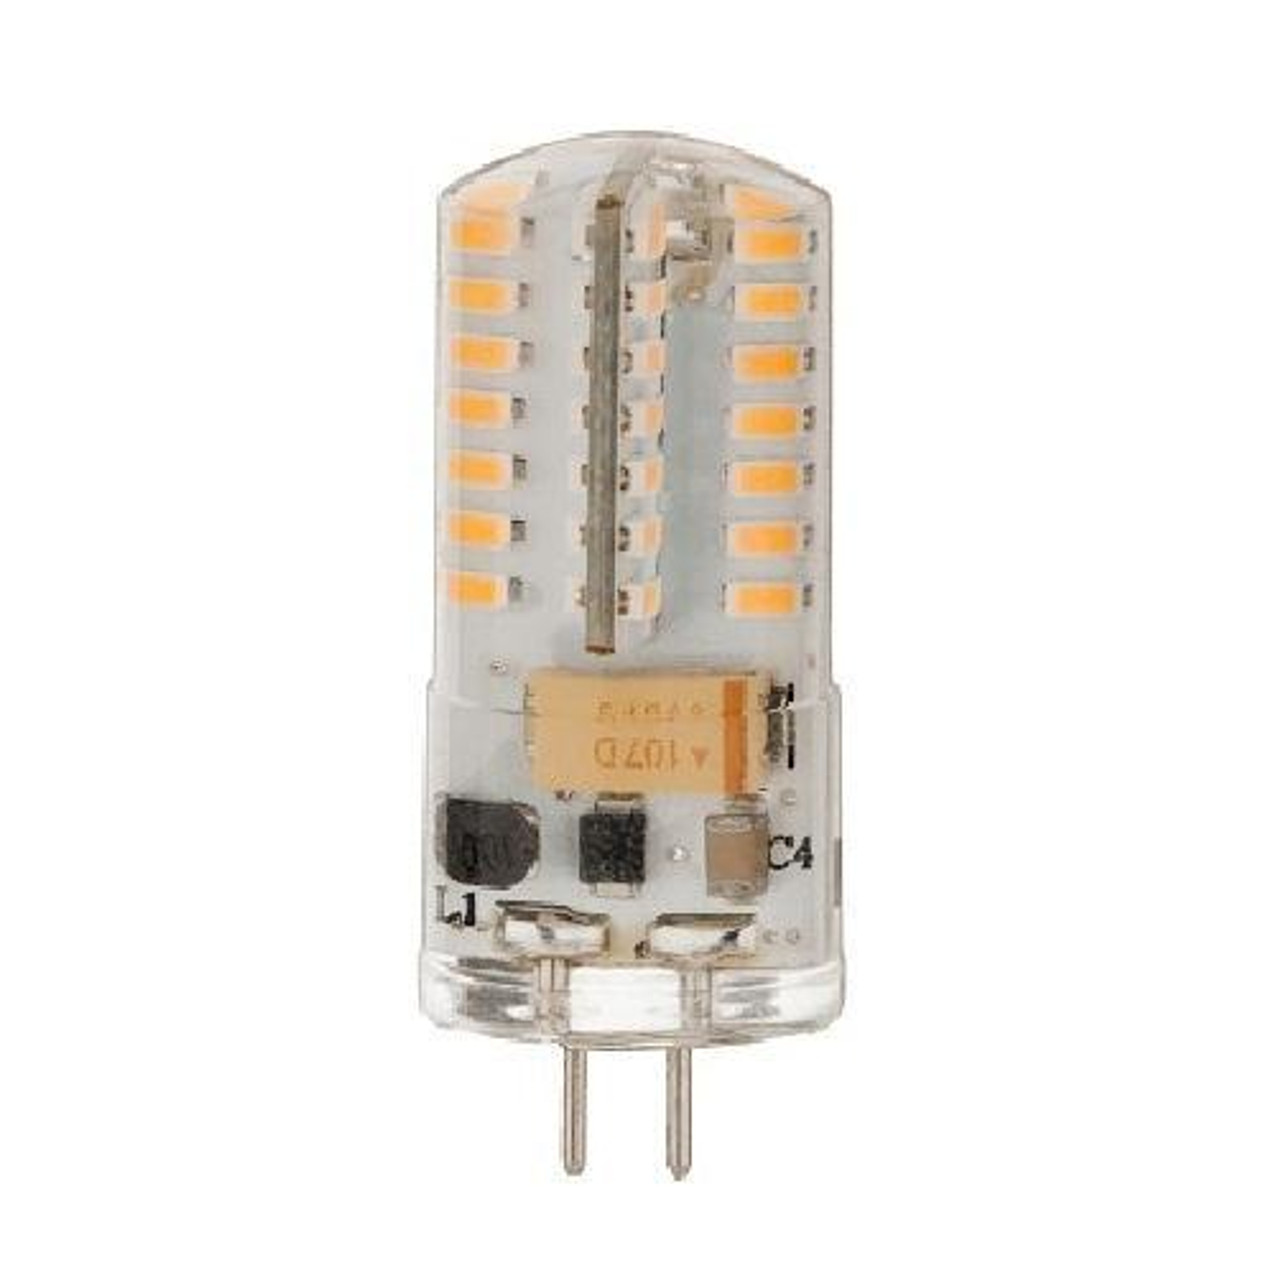 EASTIN G4 LED Bulb T3 Type Led G4 bi-pin Bulb AC/DC 12V 2W Day Light 6000K  for Candle Base Light Outdoor Landscape Lighting, 5-Pack, White